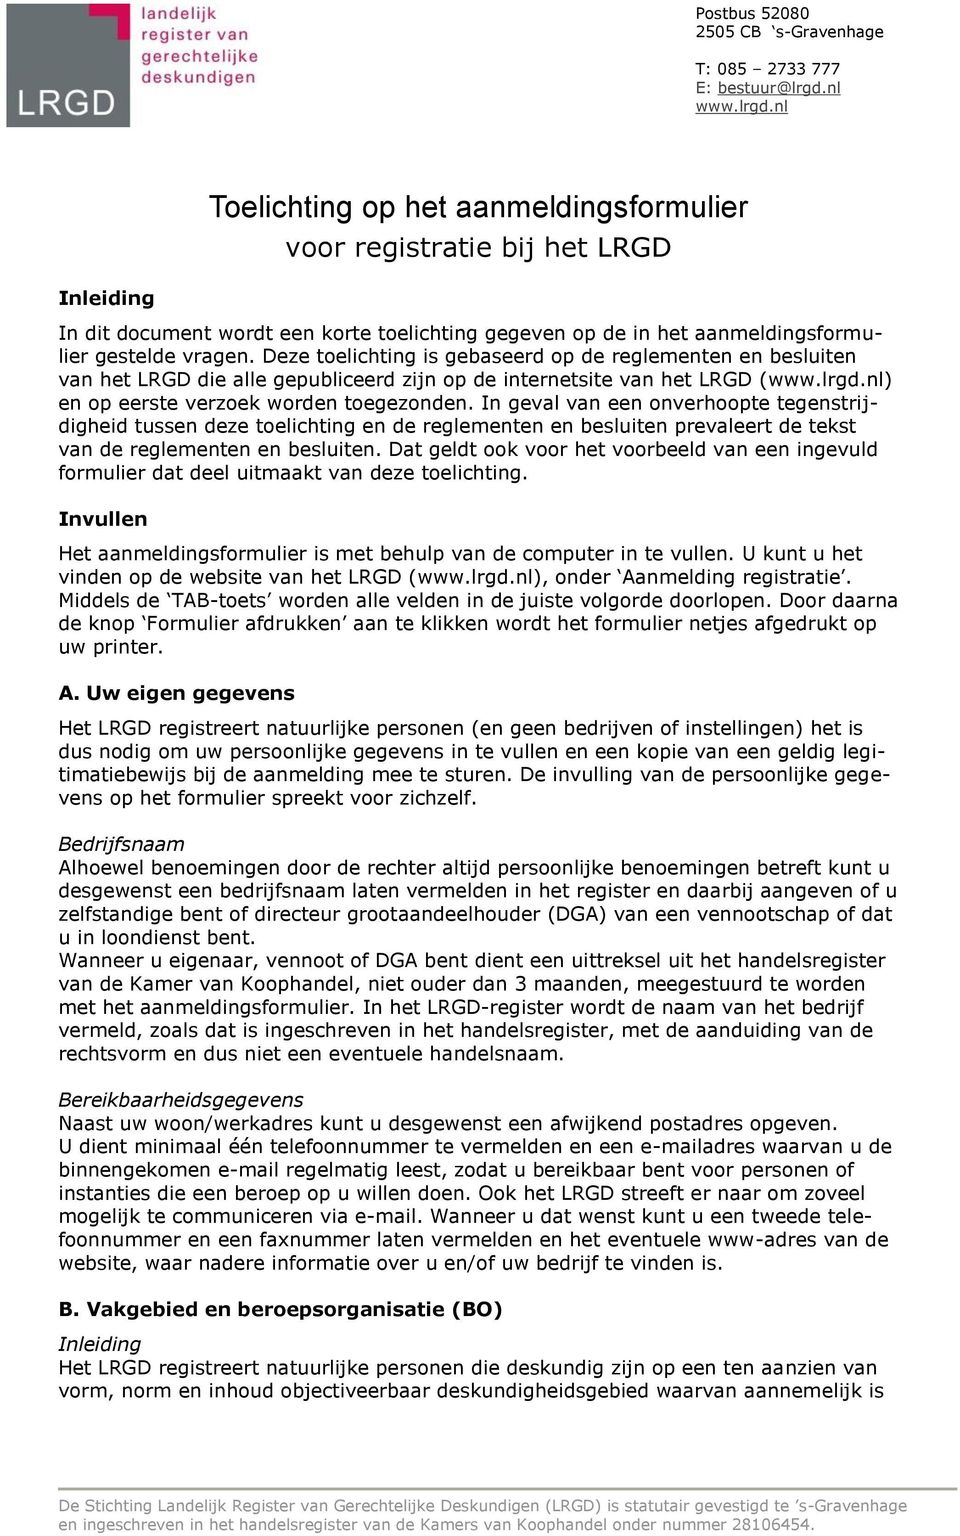 Deze toelichting is gebaseerd op de reglementen en besluiten van het LRGD die alle gepubliceerd zijn op de internetsite van het LRGD (www.lrgd.nl) en op eerste verzoek worden toegezonden.